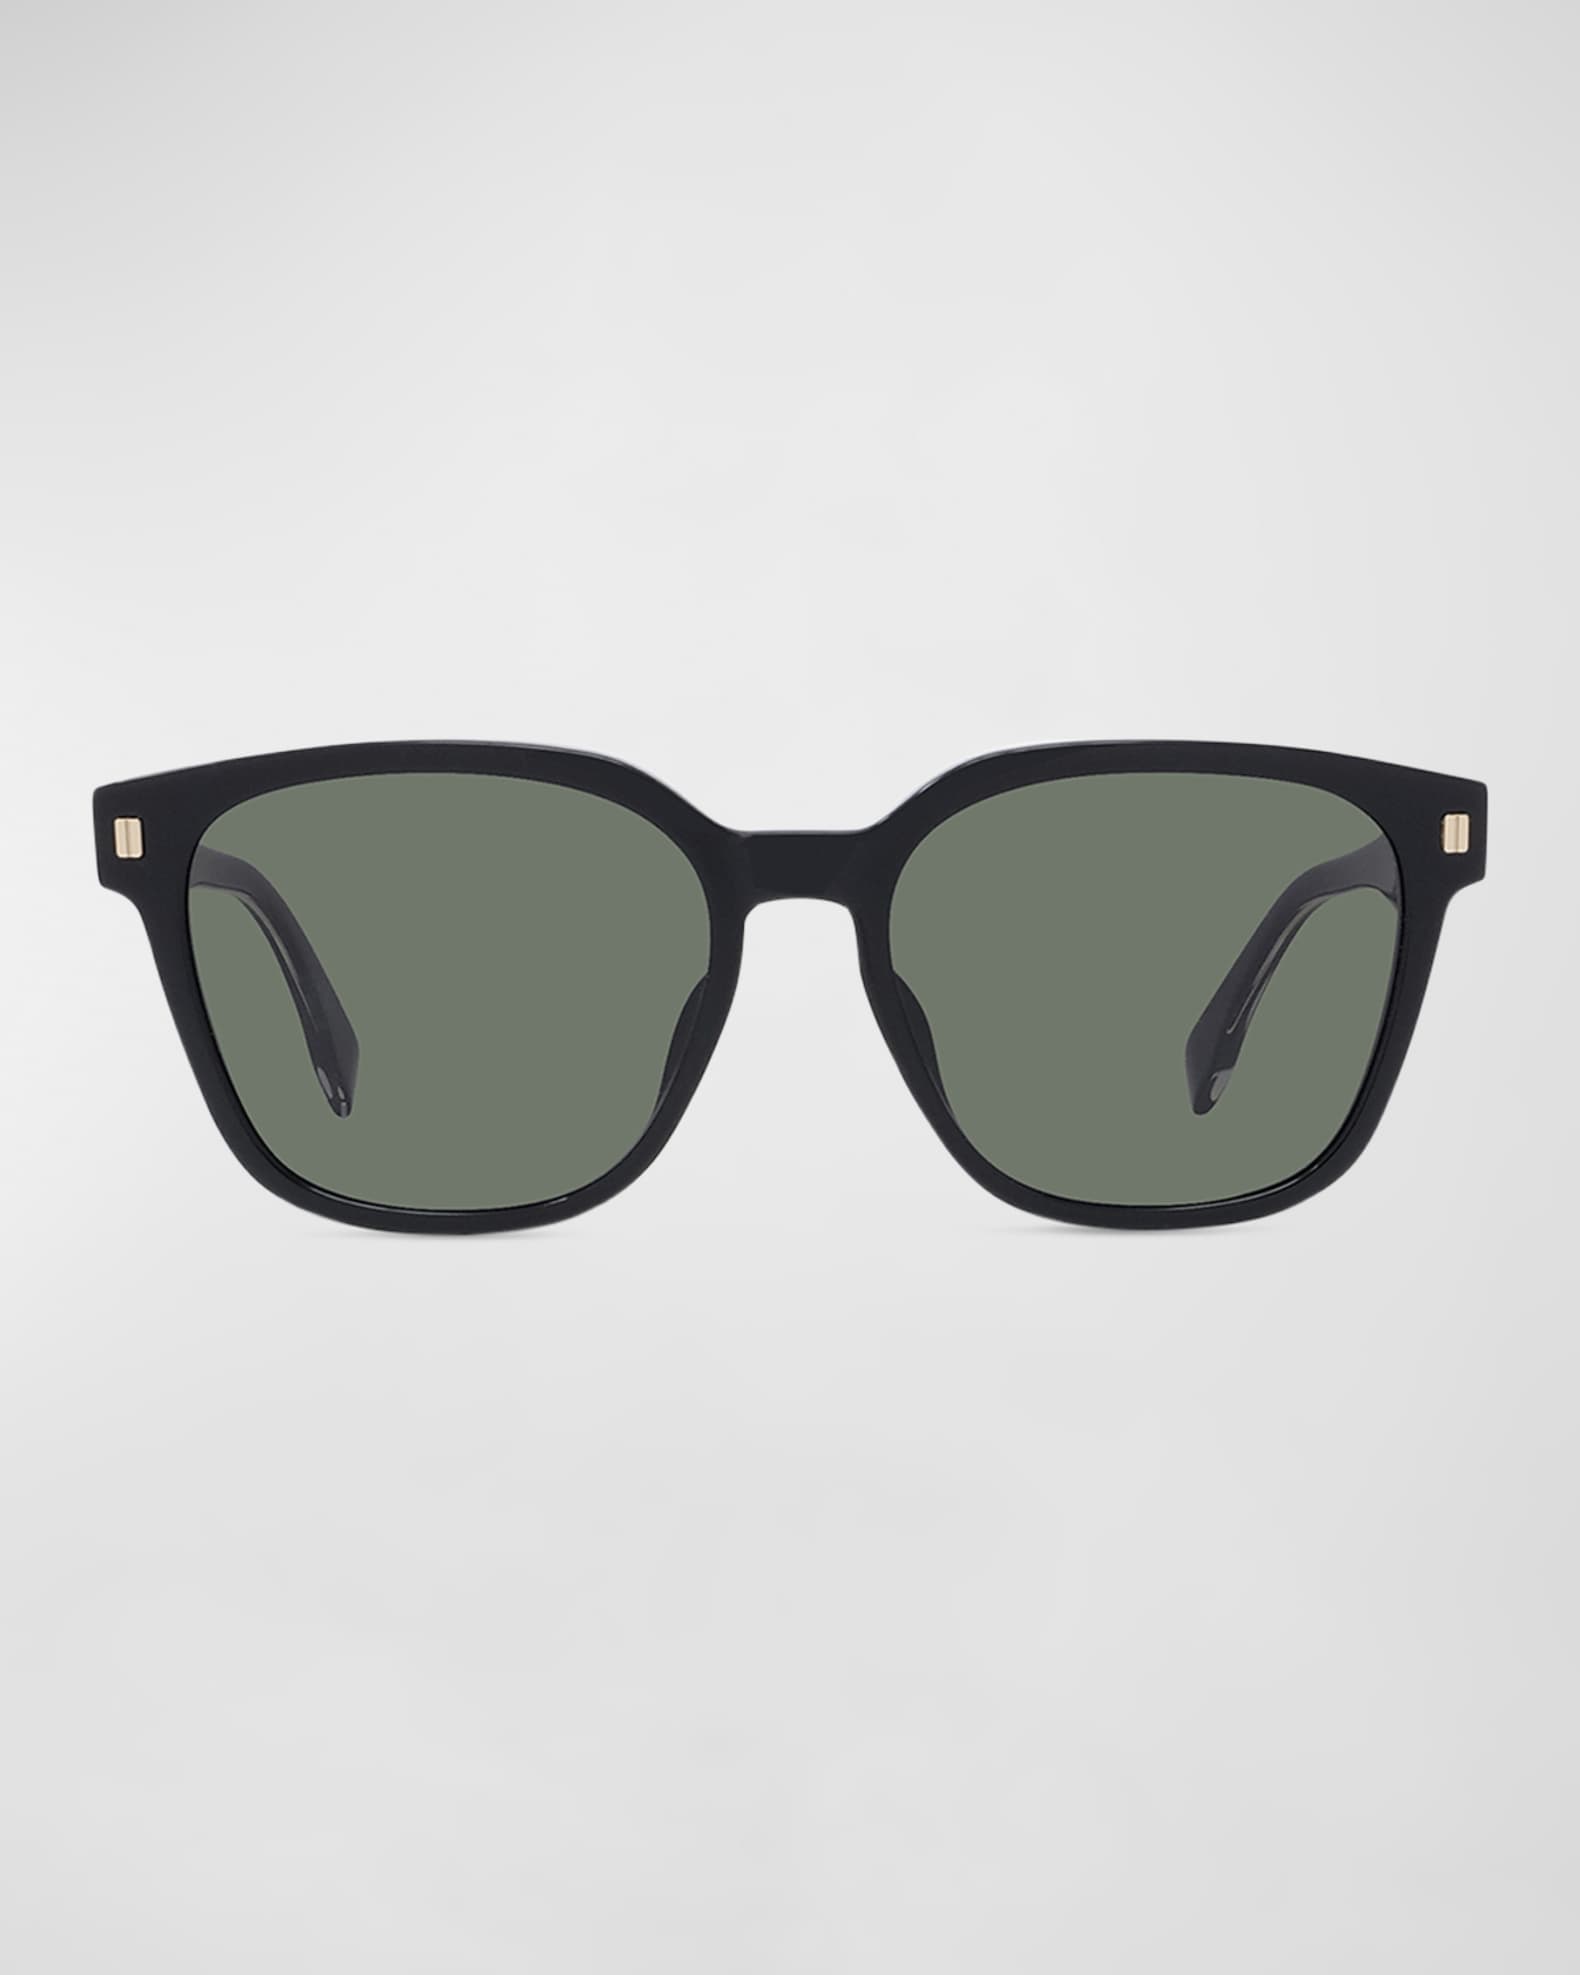 Fendi Men's Square Acetate Sunglasses | Neiman Marcus